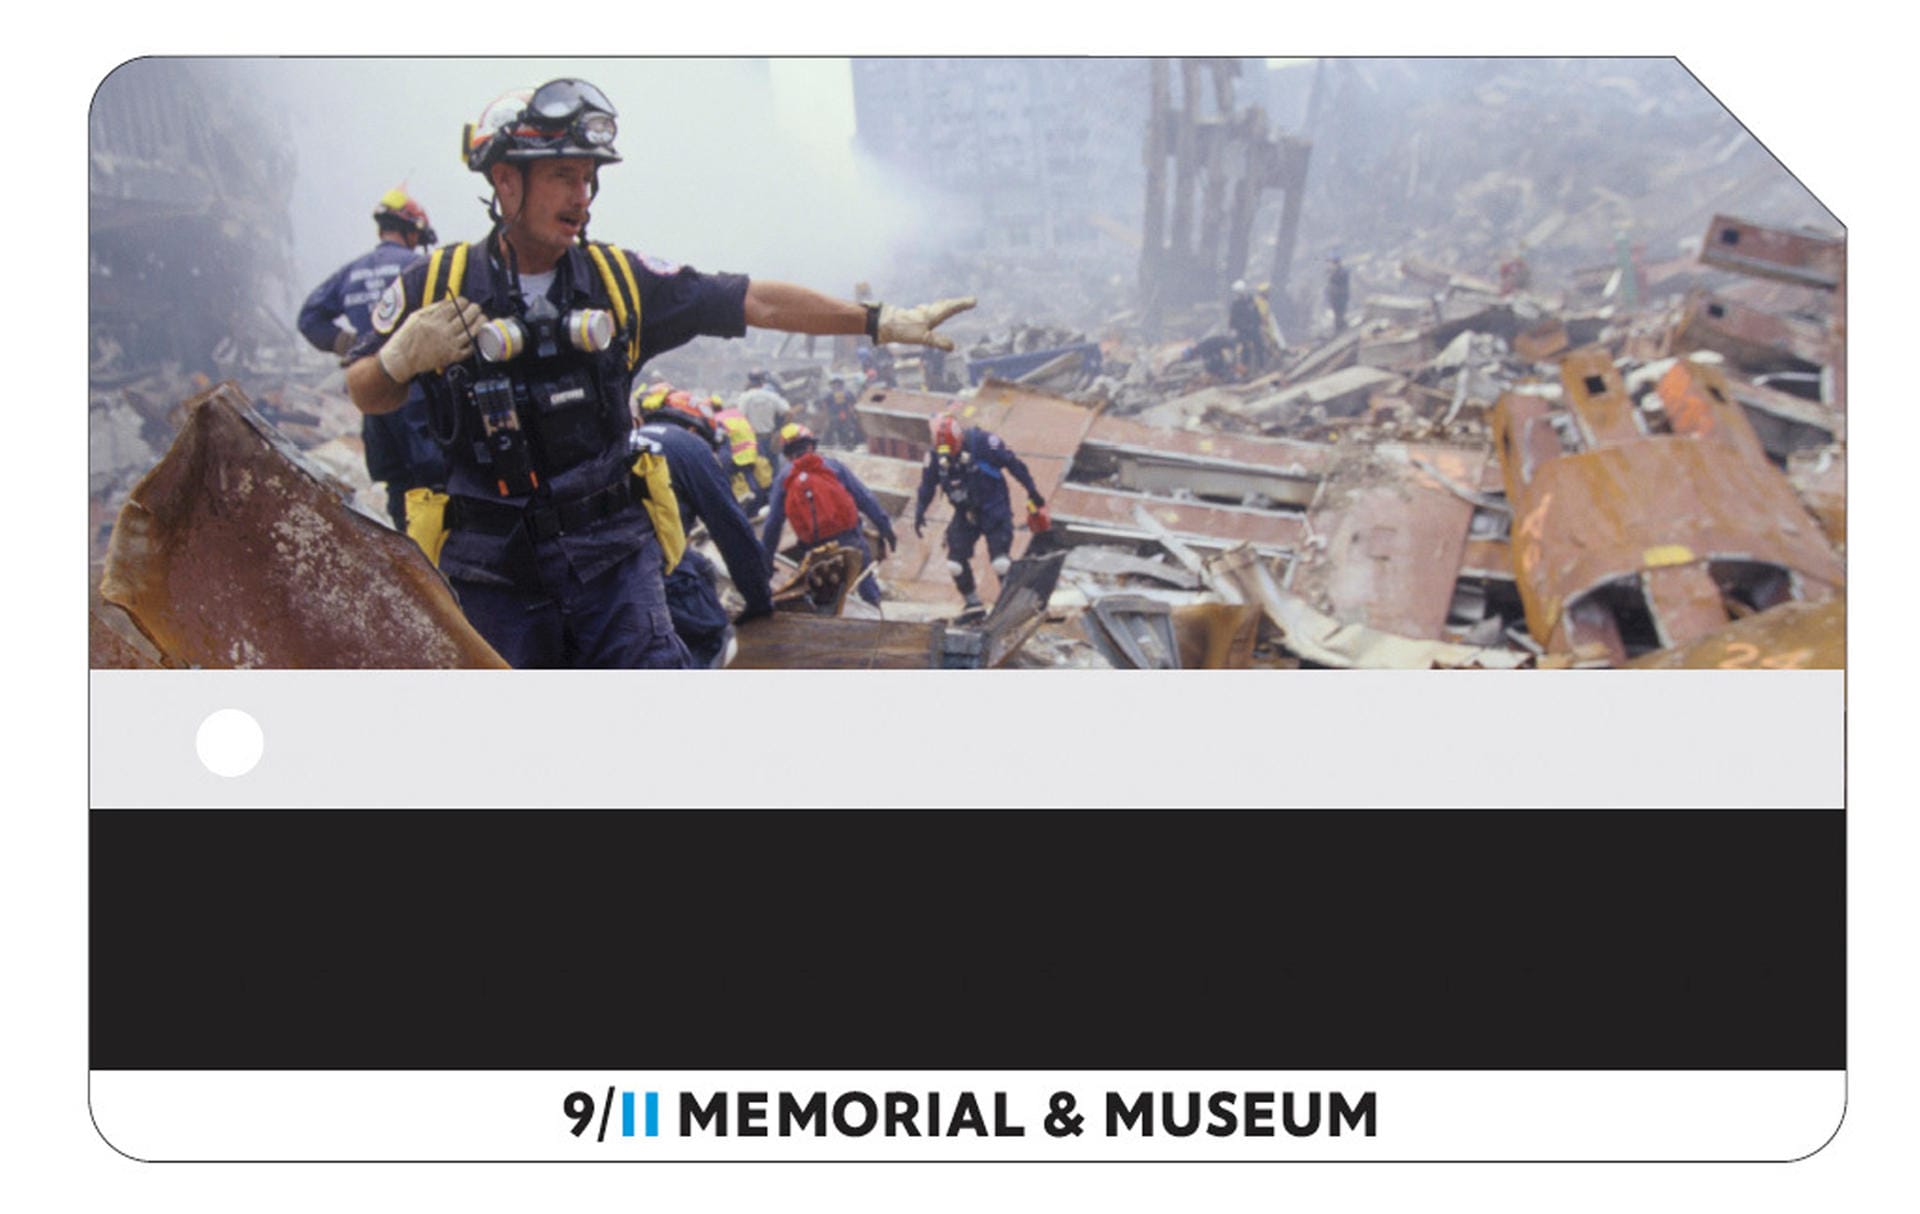 Die Aktion beginnt anlässlich des Jahrestages zum Ende der Aufräumarbeiten an "Ground Zero".